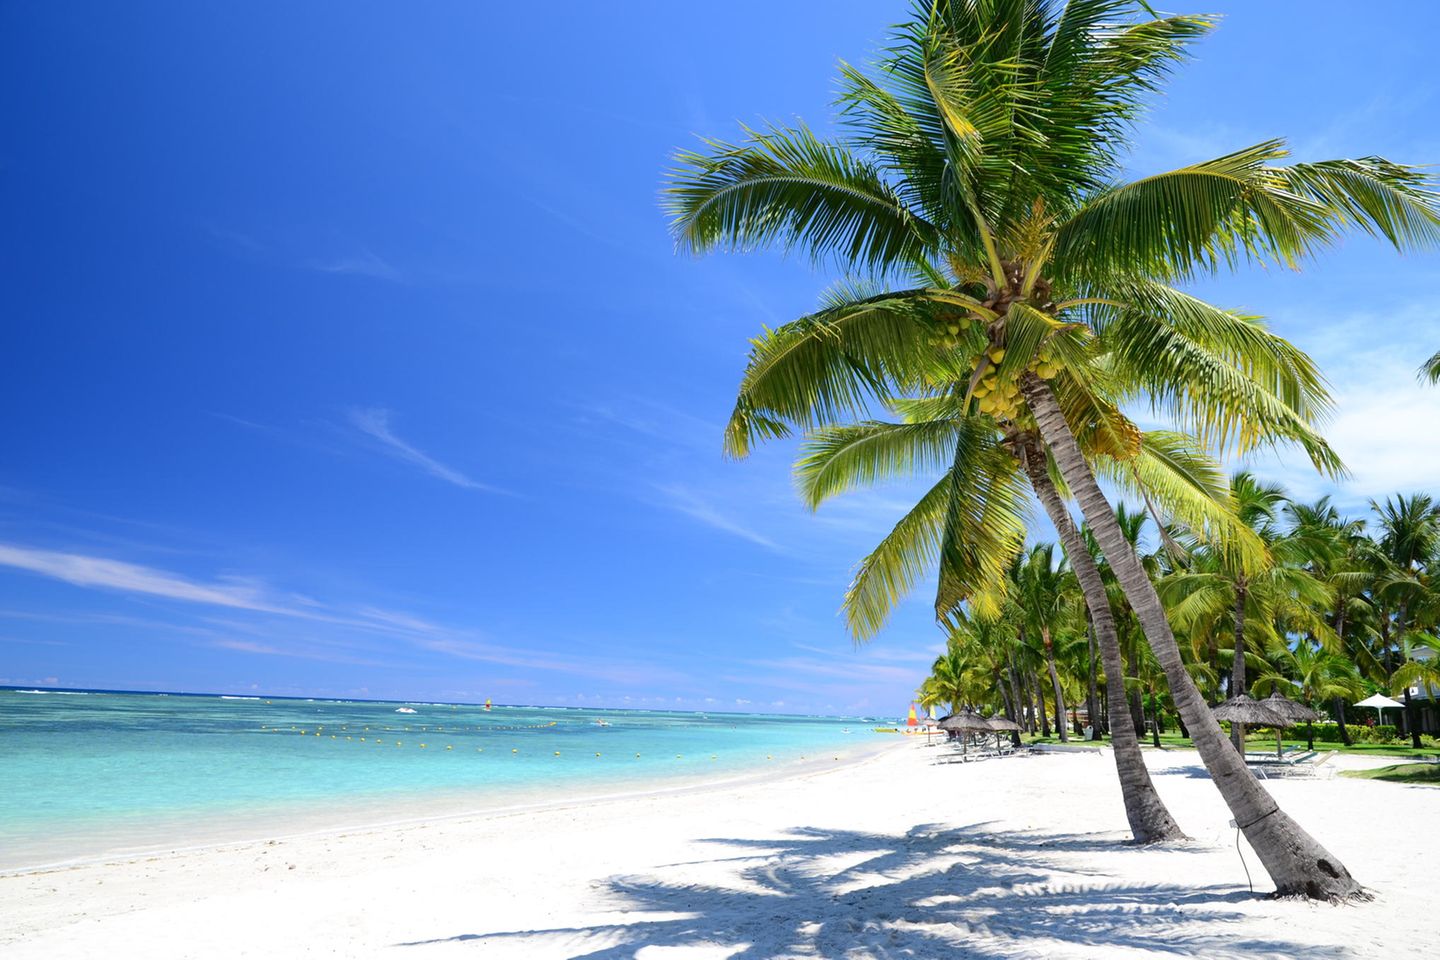 Blick auf einen weißen Strand mit zwei Palmen im Vordergrund